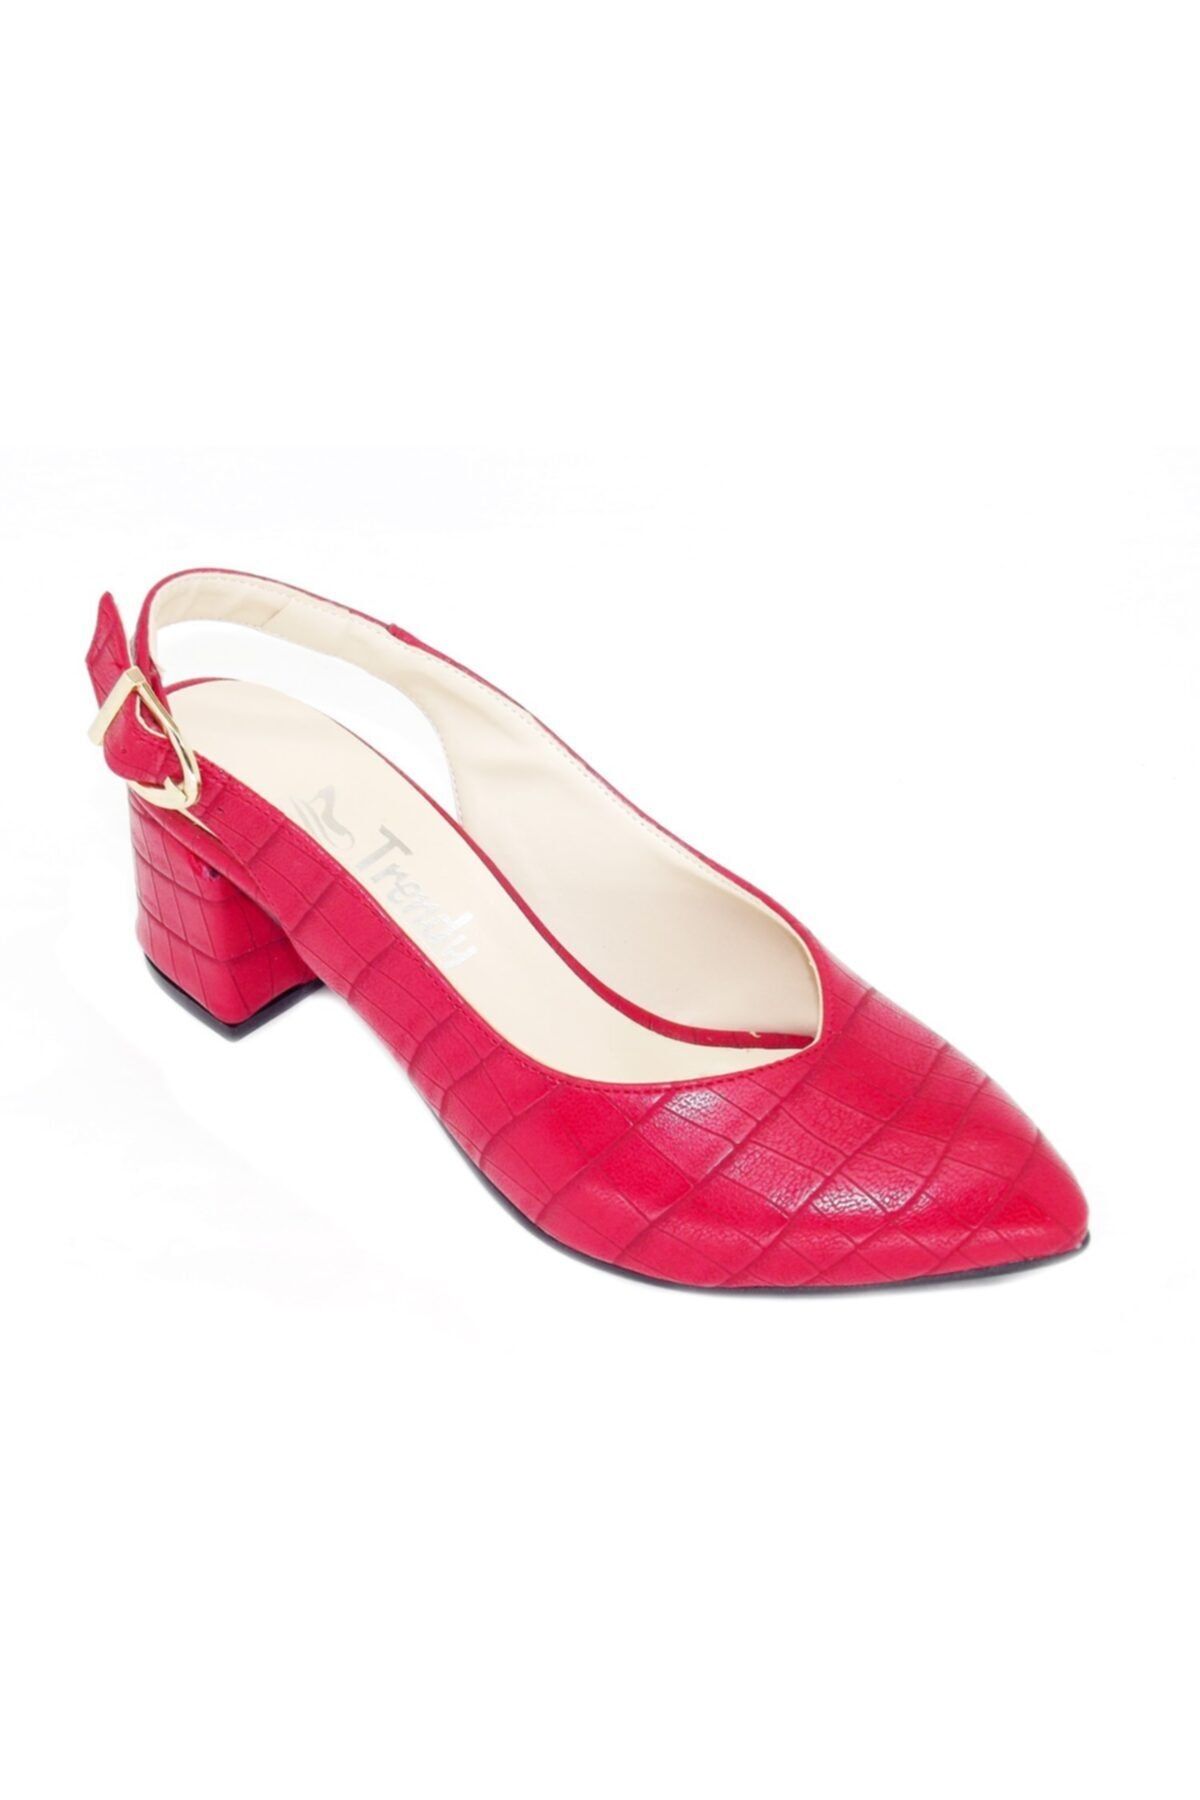 TRENDY Kadın Kırmızı Kalın Topuklu Günlük Ayakkabı 100100121